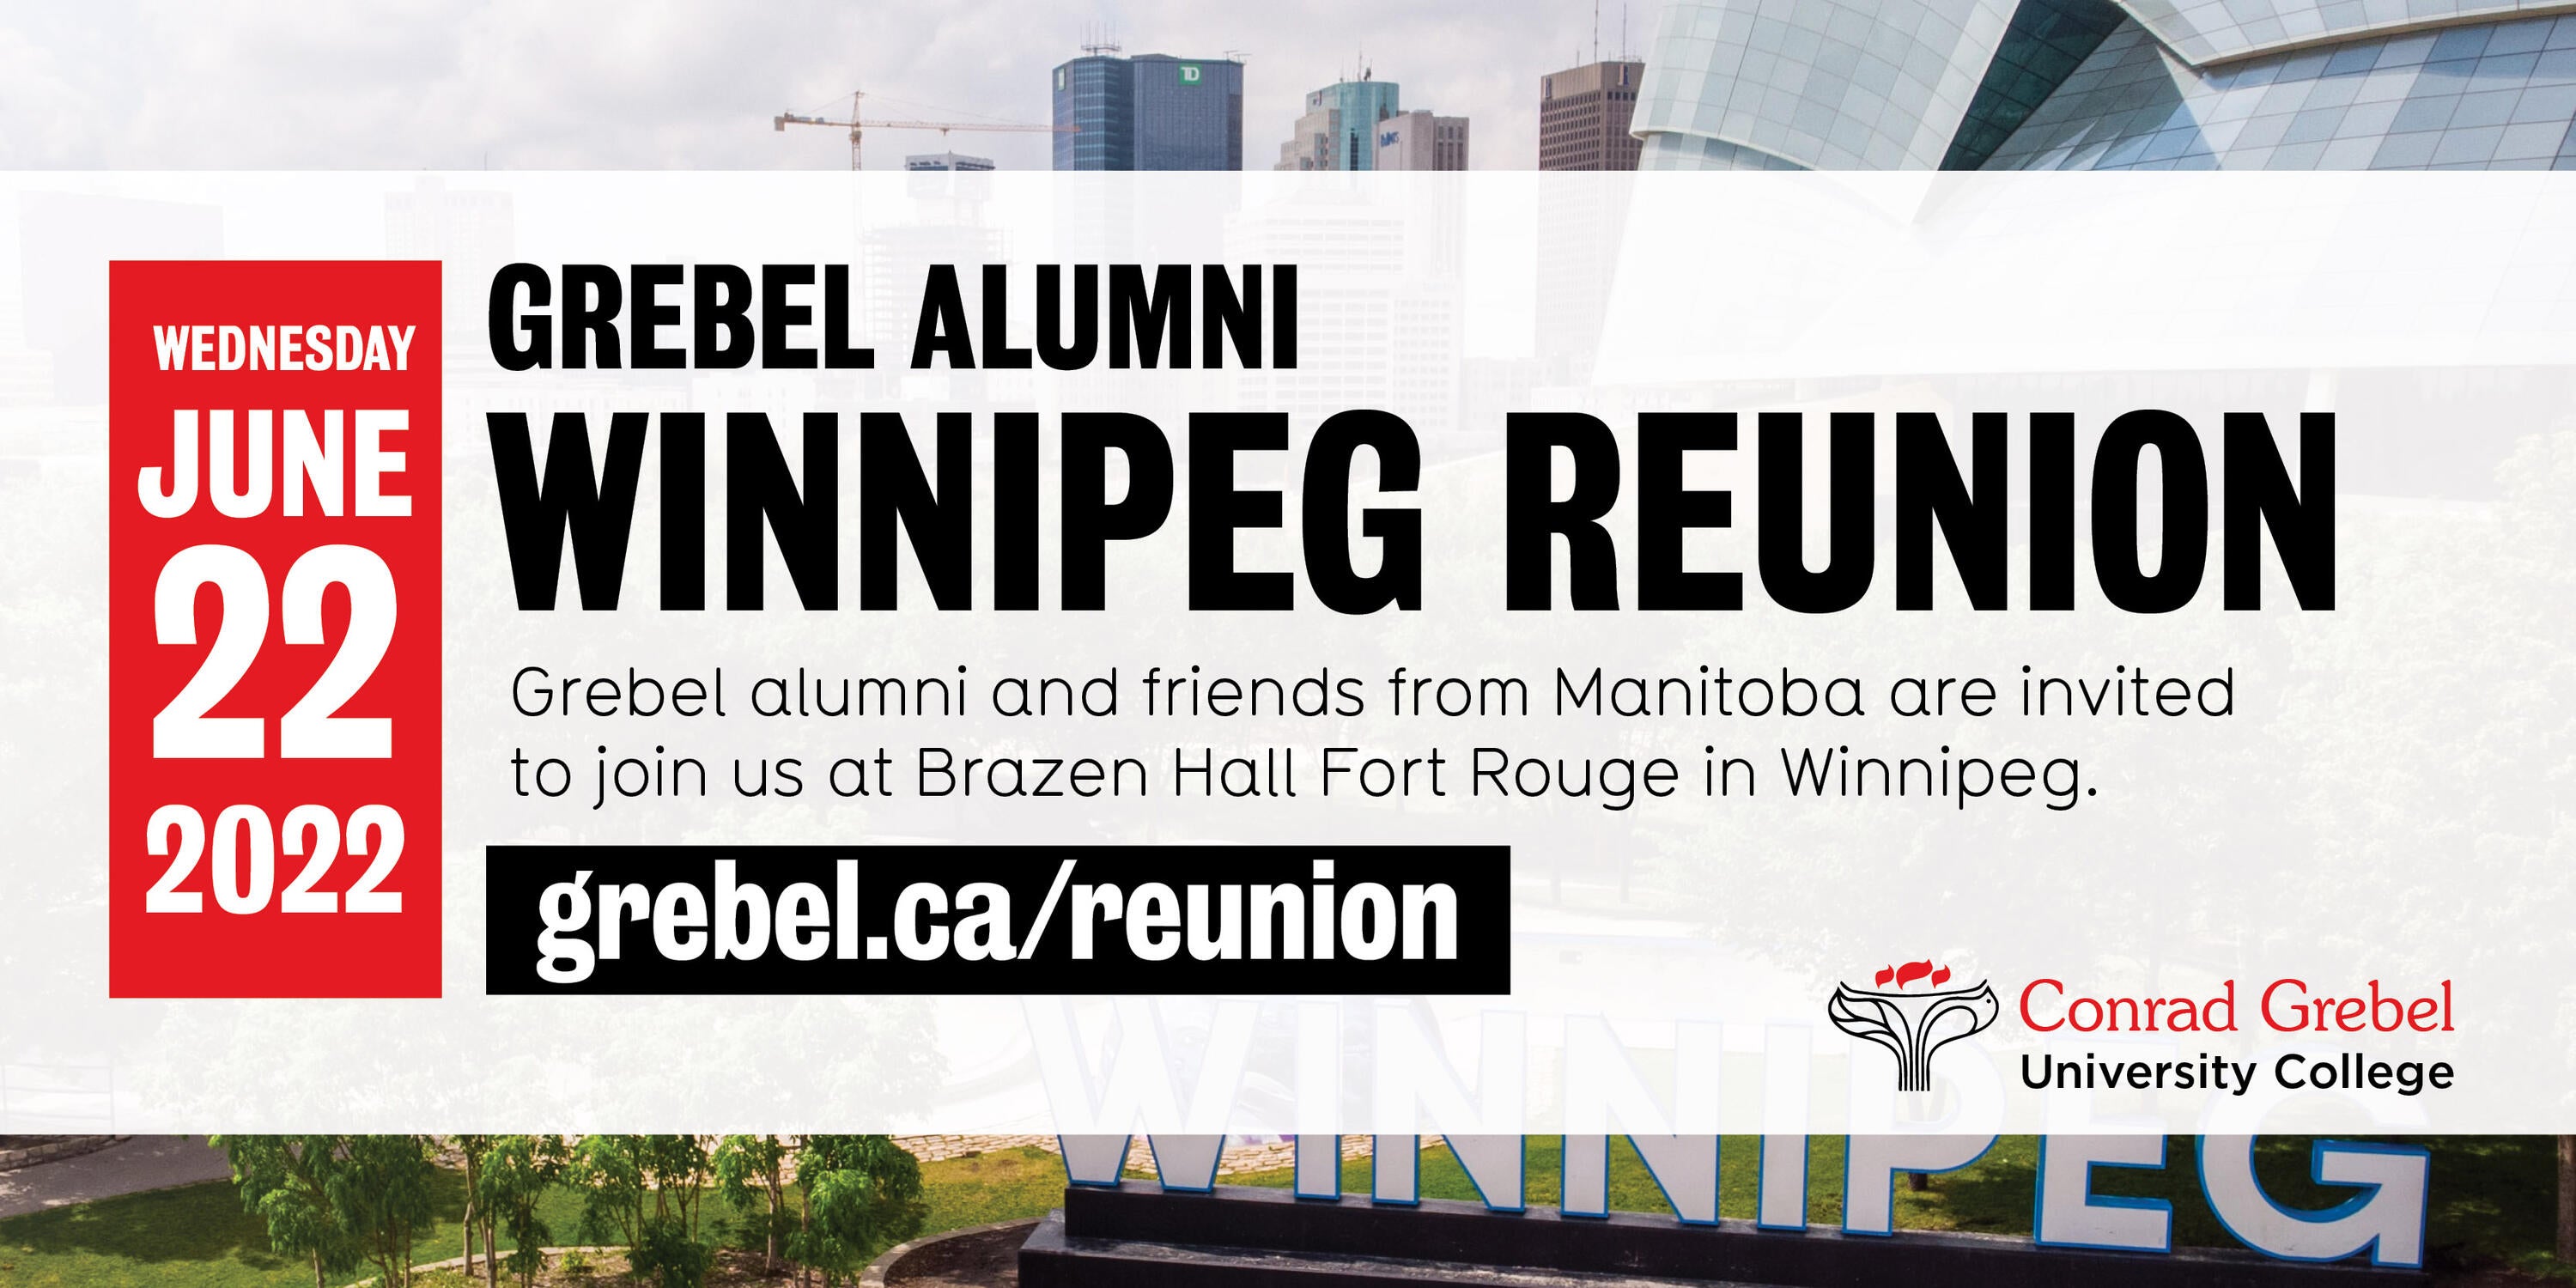 Winnipeg reunion banner